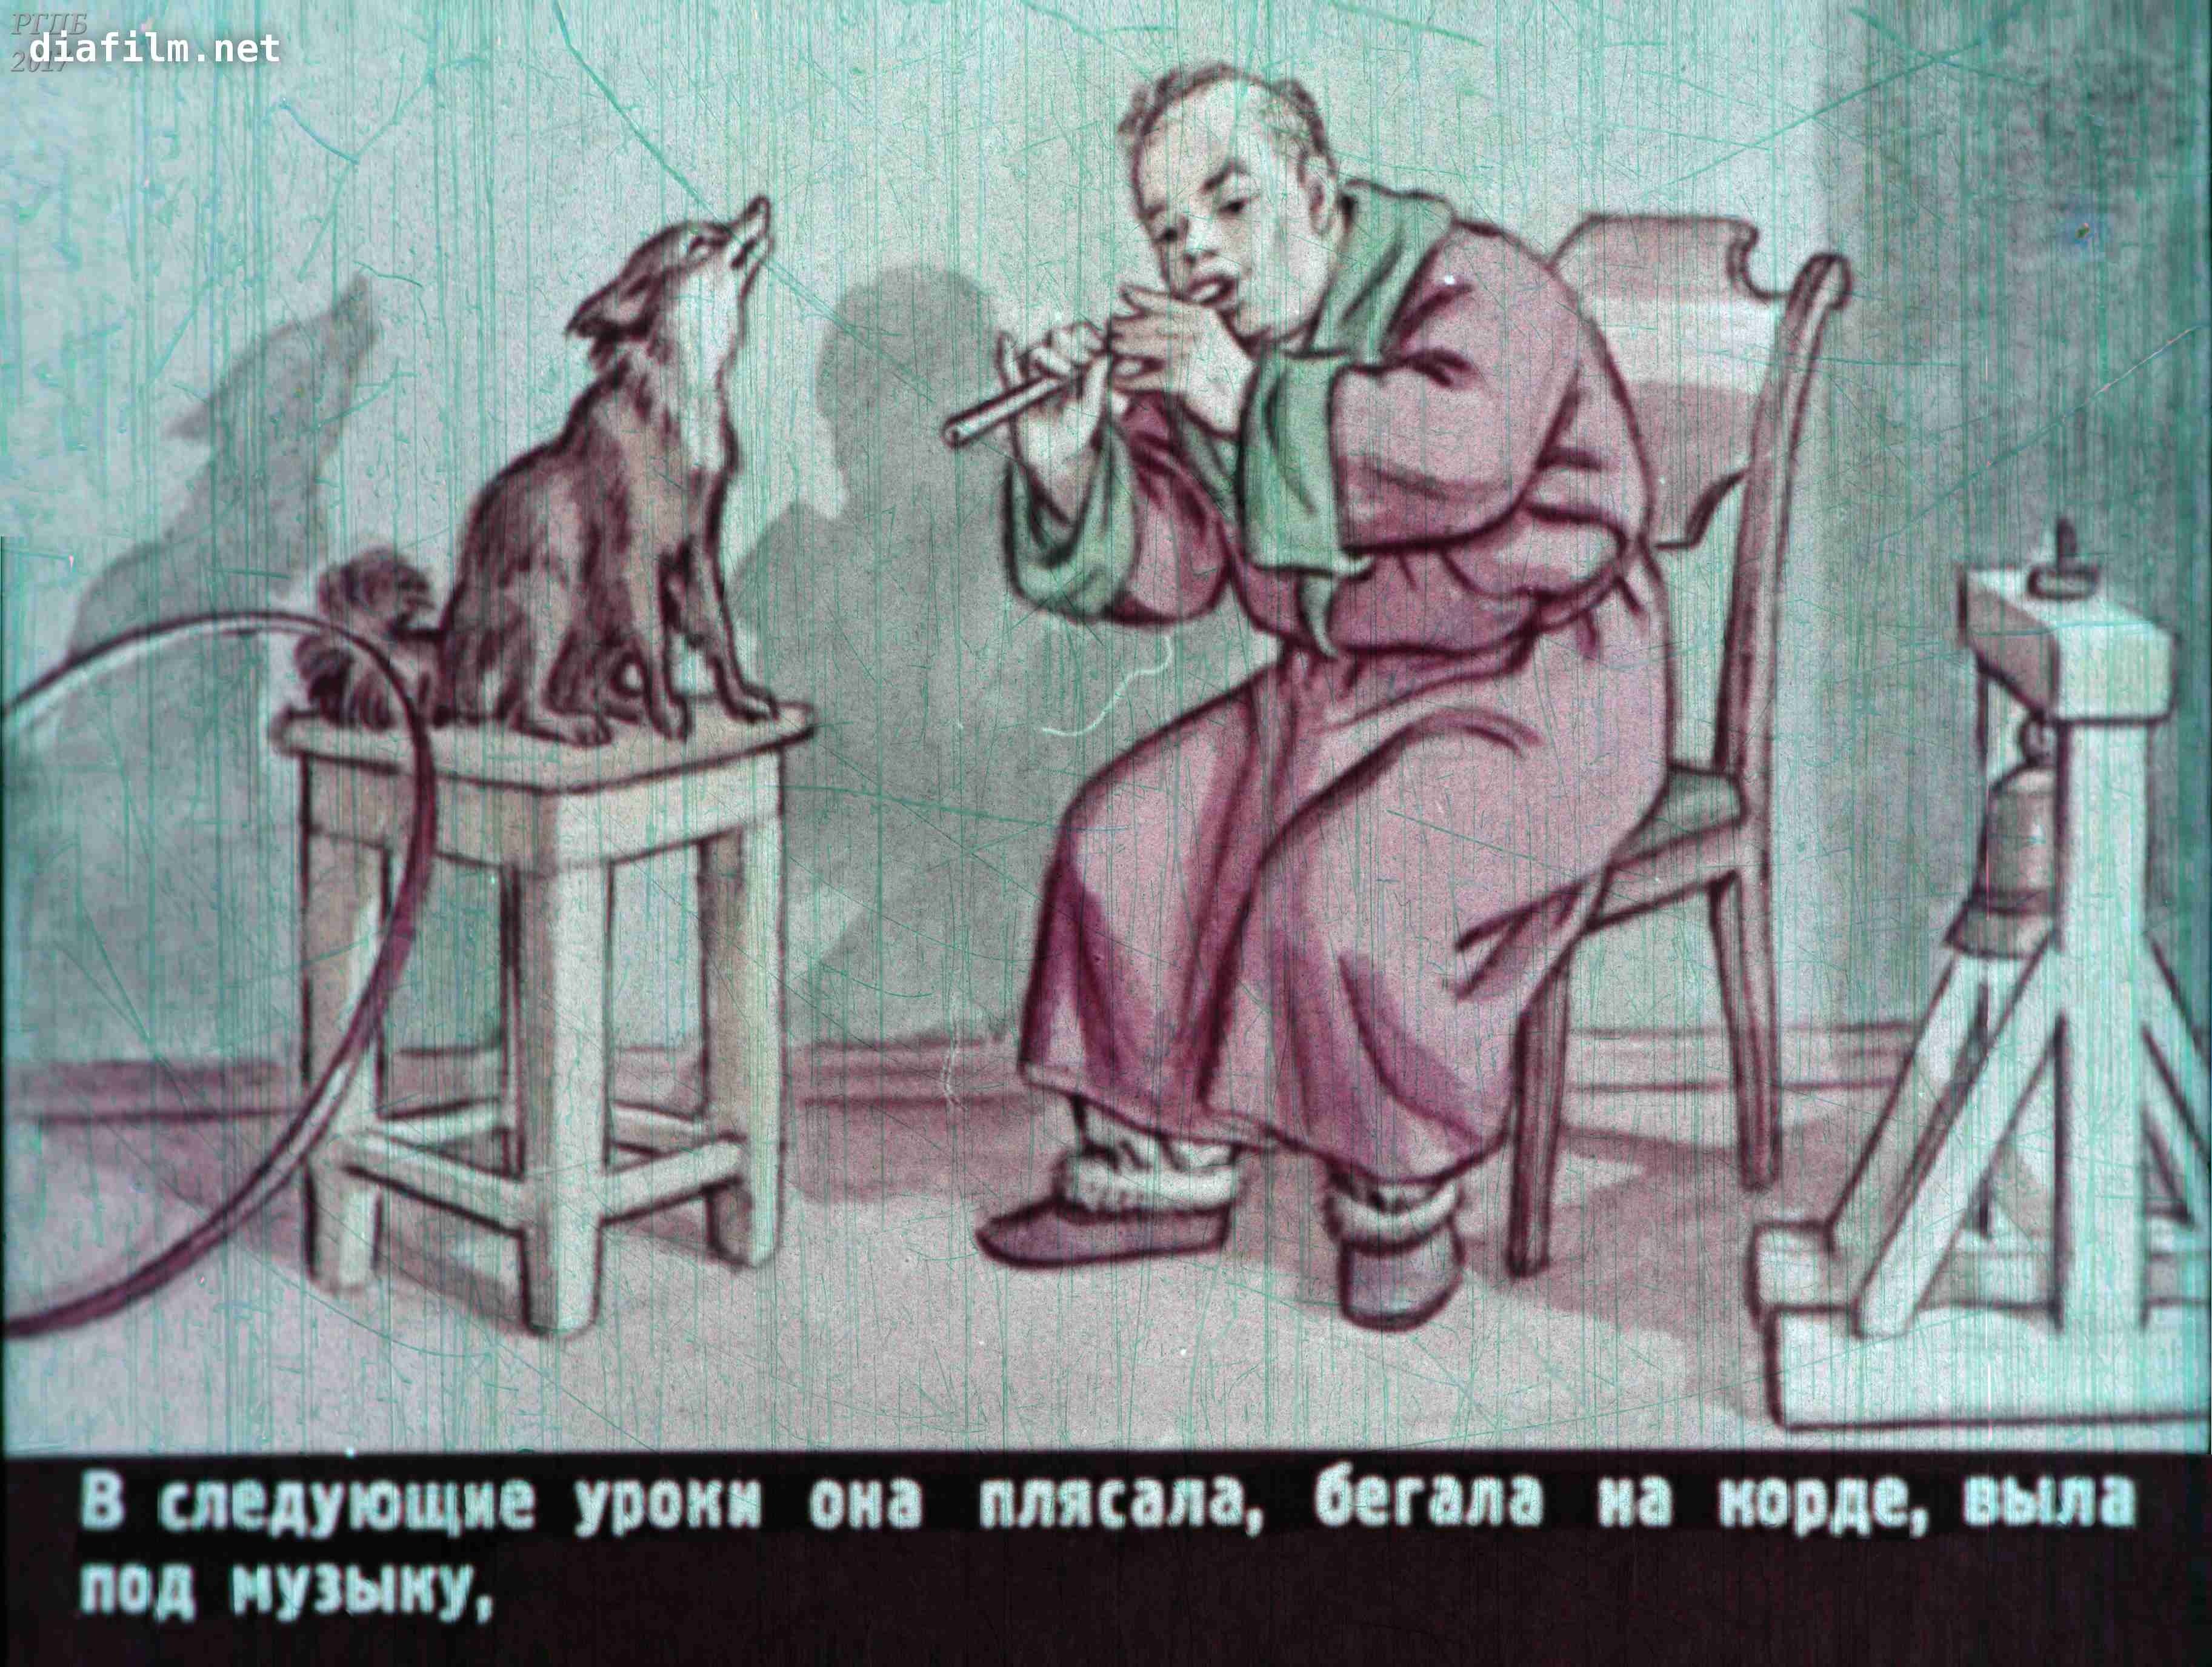 Иллюстрация по рассказам Чехова каштанка